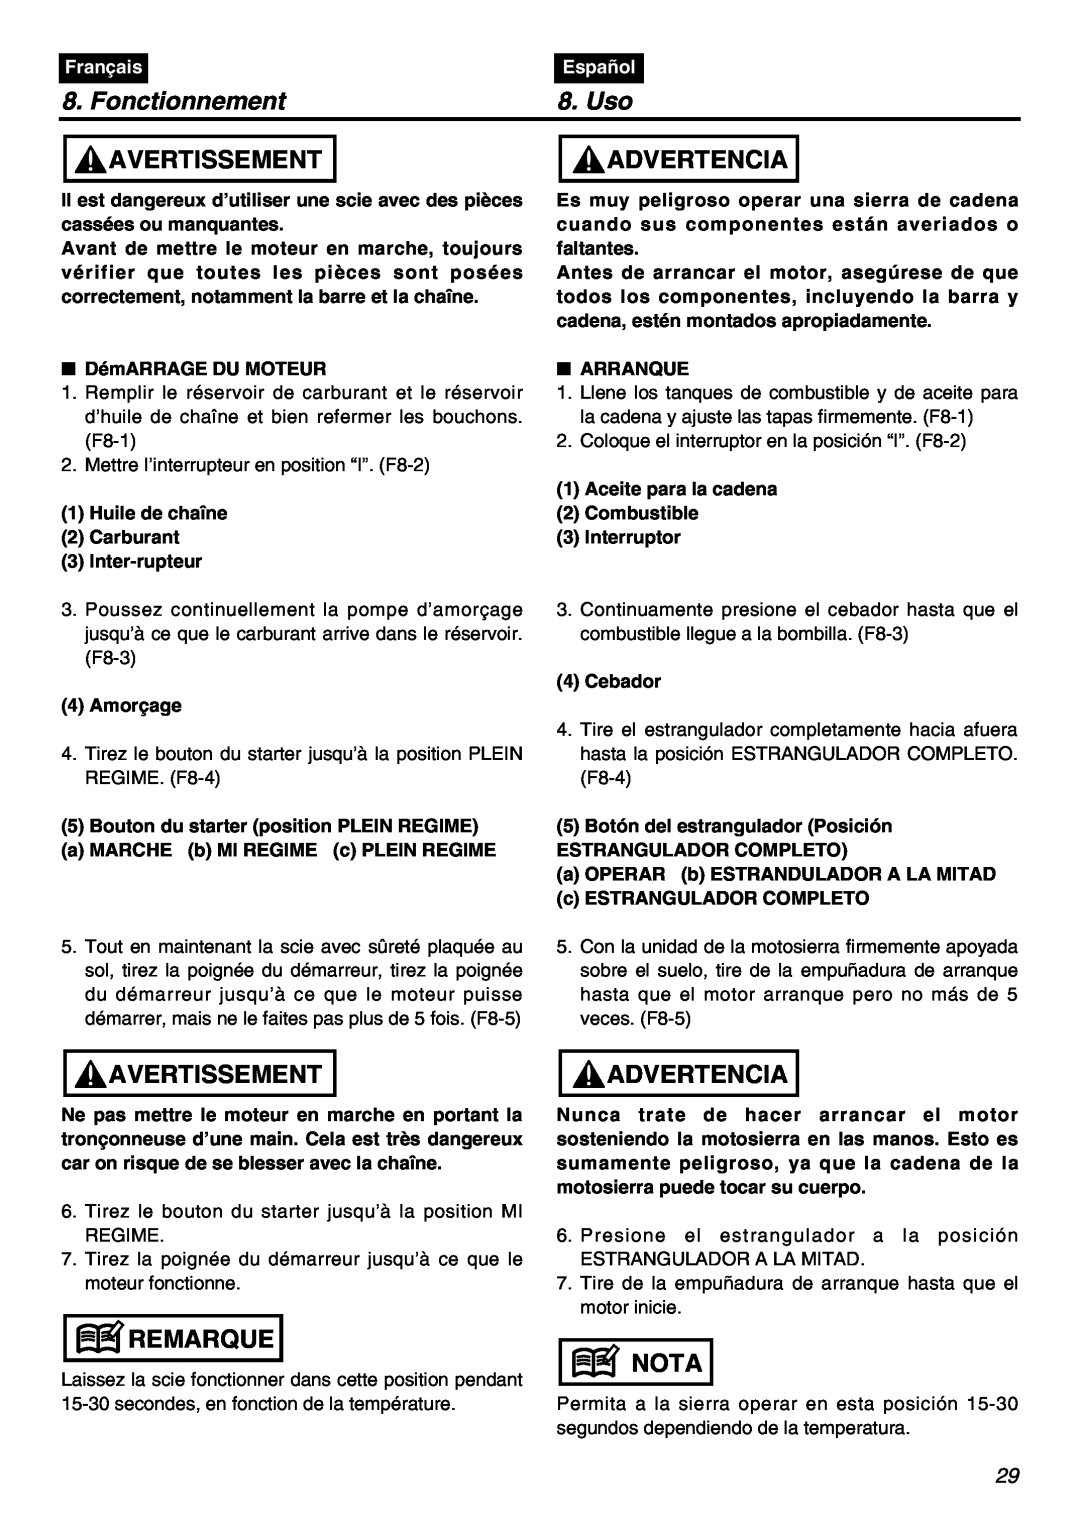 RedMax GZ400 manual Fonctionnement, Uso, Avertissement, Advertencia, Remarque, Nota, Français, Español 